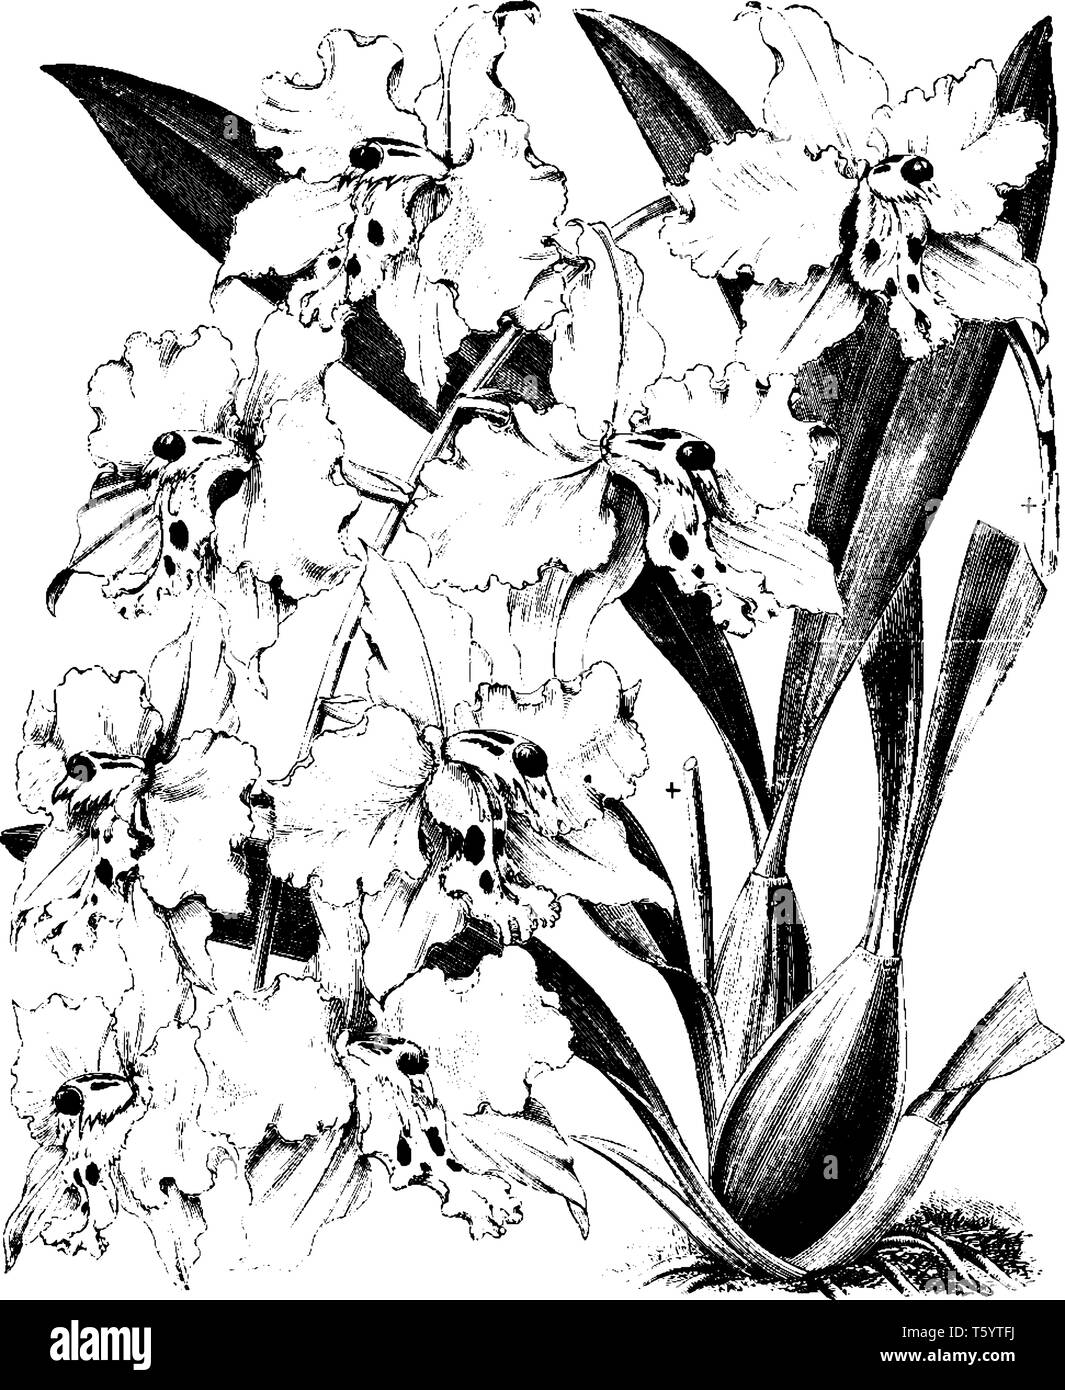 Il est considéré par beaucoup comme la plus belle de toutes les orchidées mais est aussi l'un des plus difficiles à cultiver. Odontoglossum crispum pure a des fleurs Illustration de Vecteur